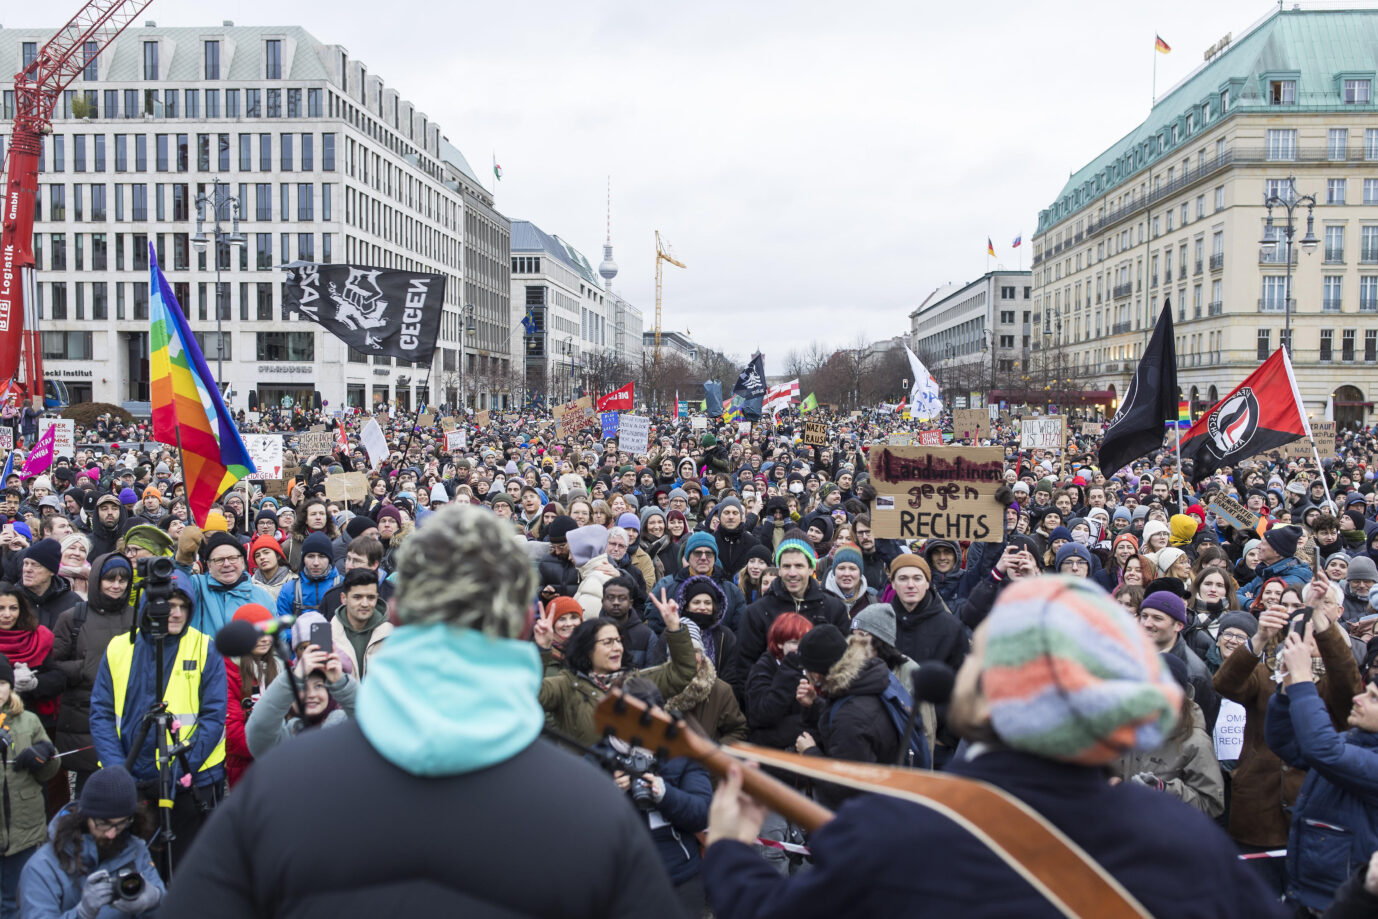 Clemens Rehbein (Sänger und Gitarrist) und Philipp Dausch (Begleitsänger) von der Band Milky Chance spielen in Berlin bei einer großen Anti-AfD-Demonstration: Verschiedenste Teilnehmer von Kirchenvertretern bis zur Antifa.